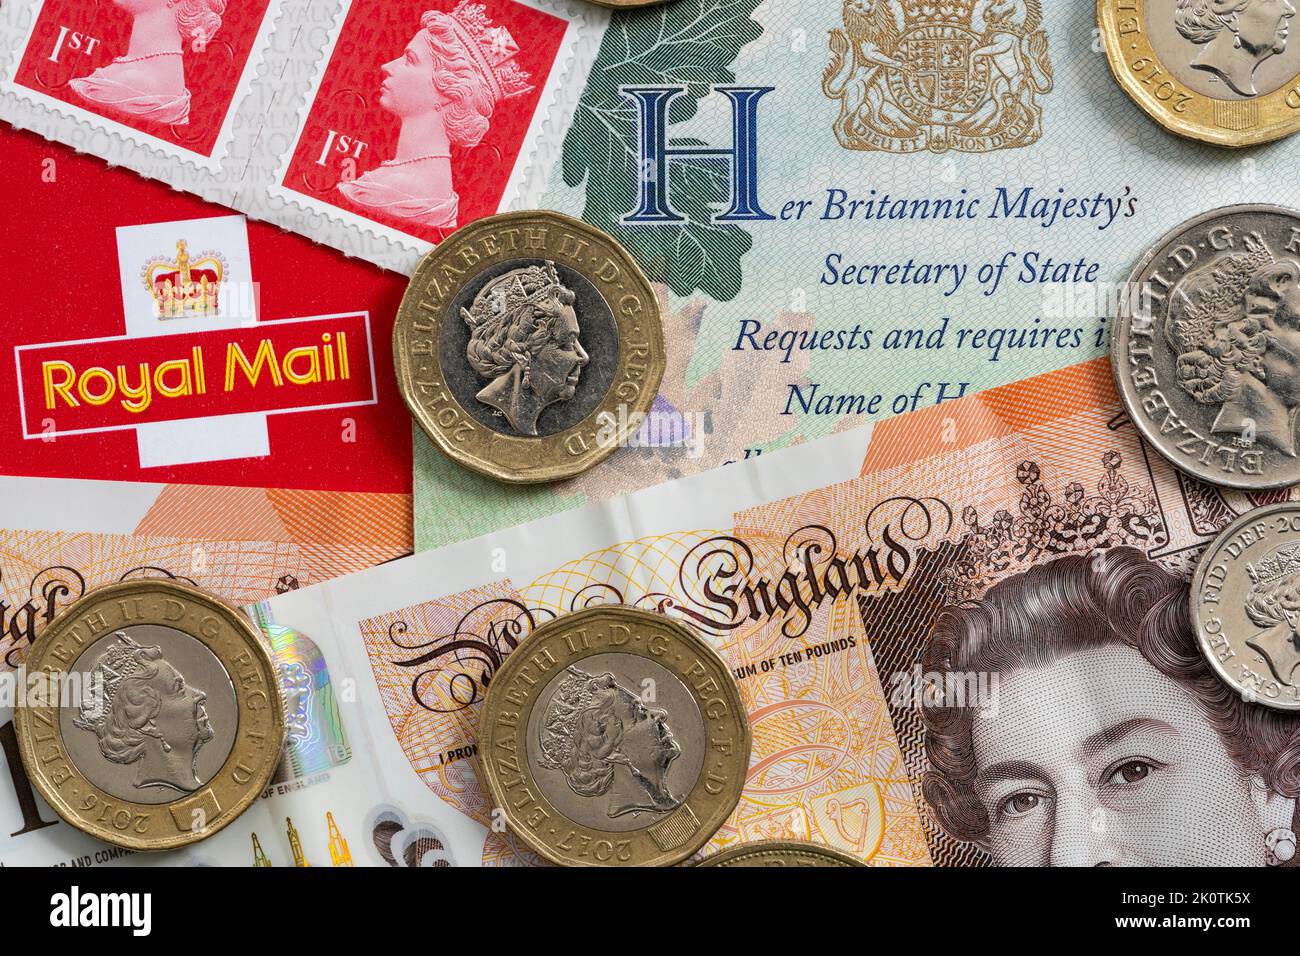 La rimozione del nome e dell'immagine della regina Elisabetta II dalla vita pubblica richiederà un po' di tempo: Pagina del passaporto, francobolli e monete che portano l'iconografia della regina Foto Stock